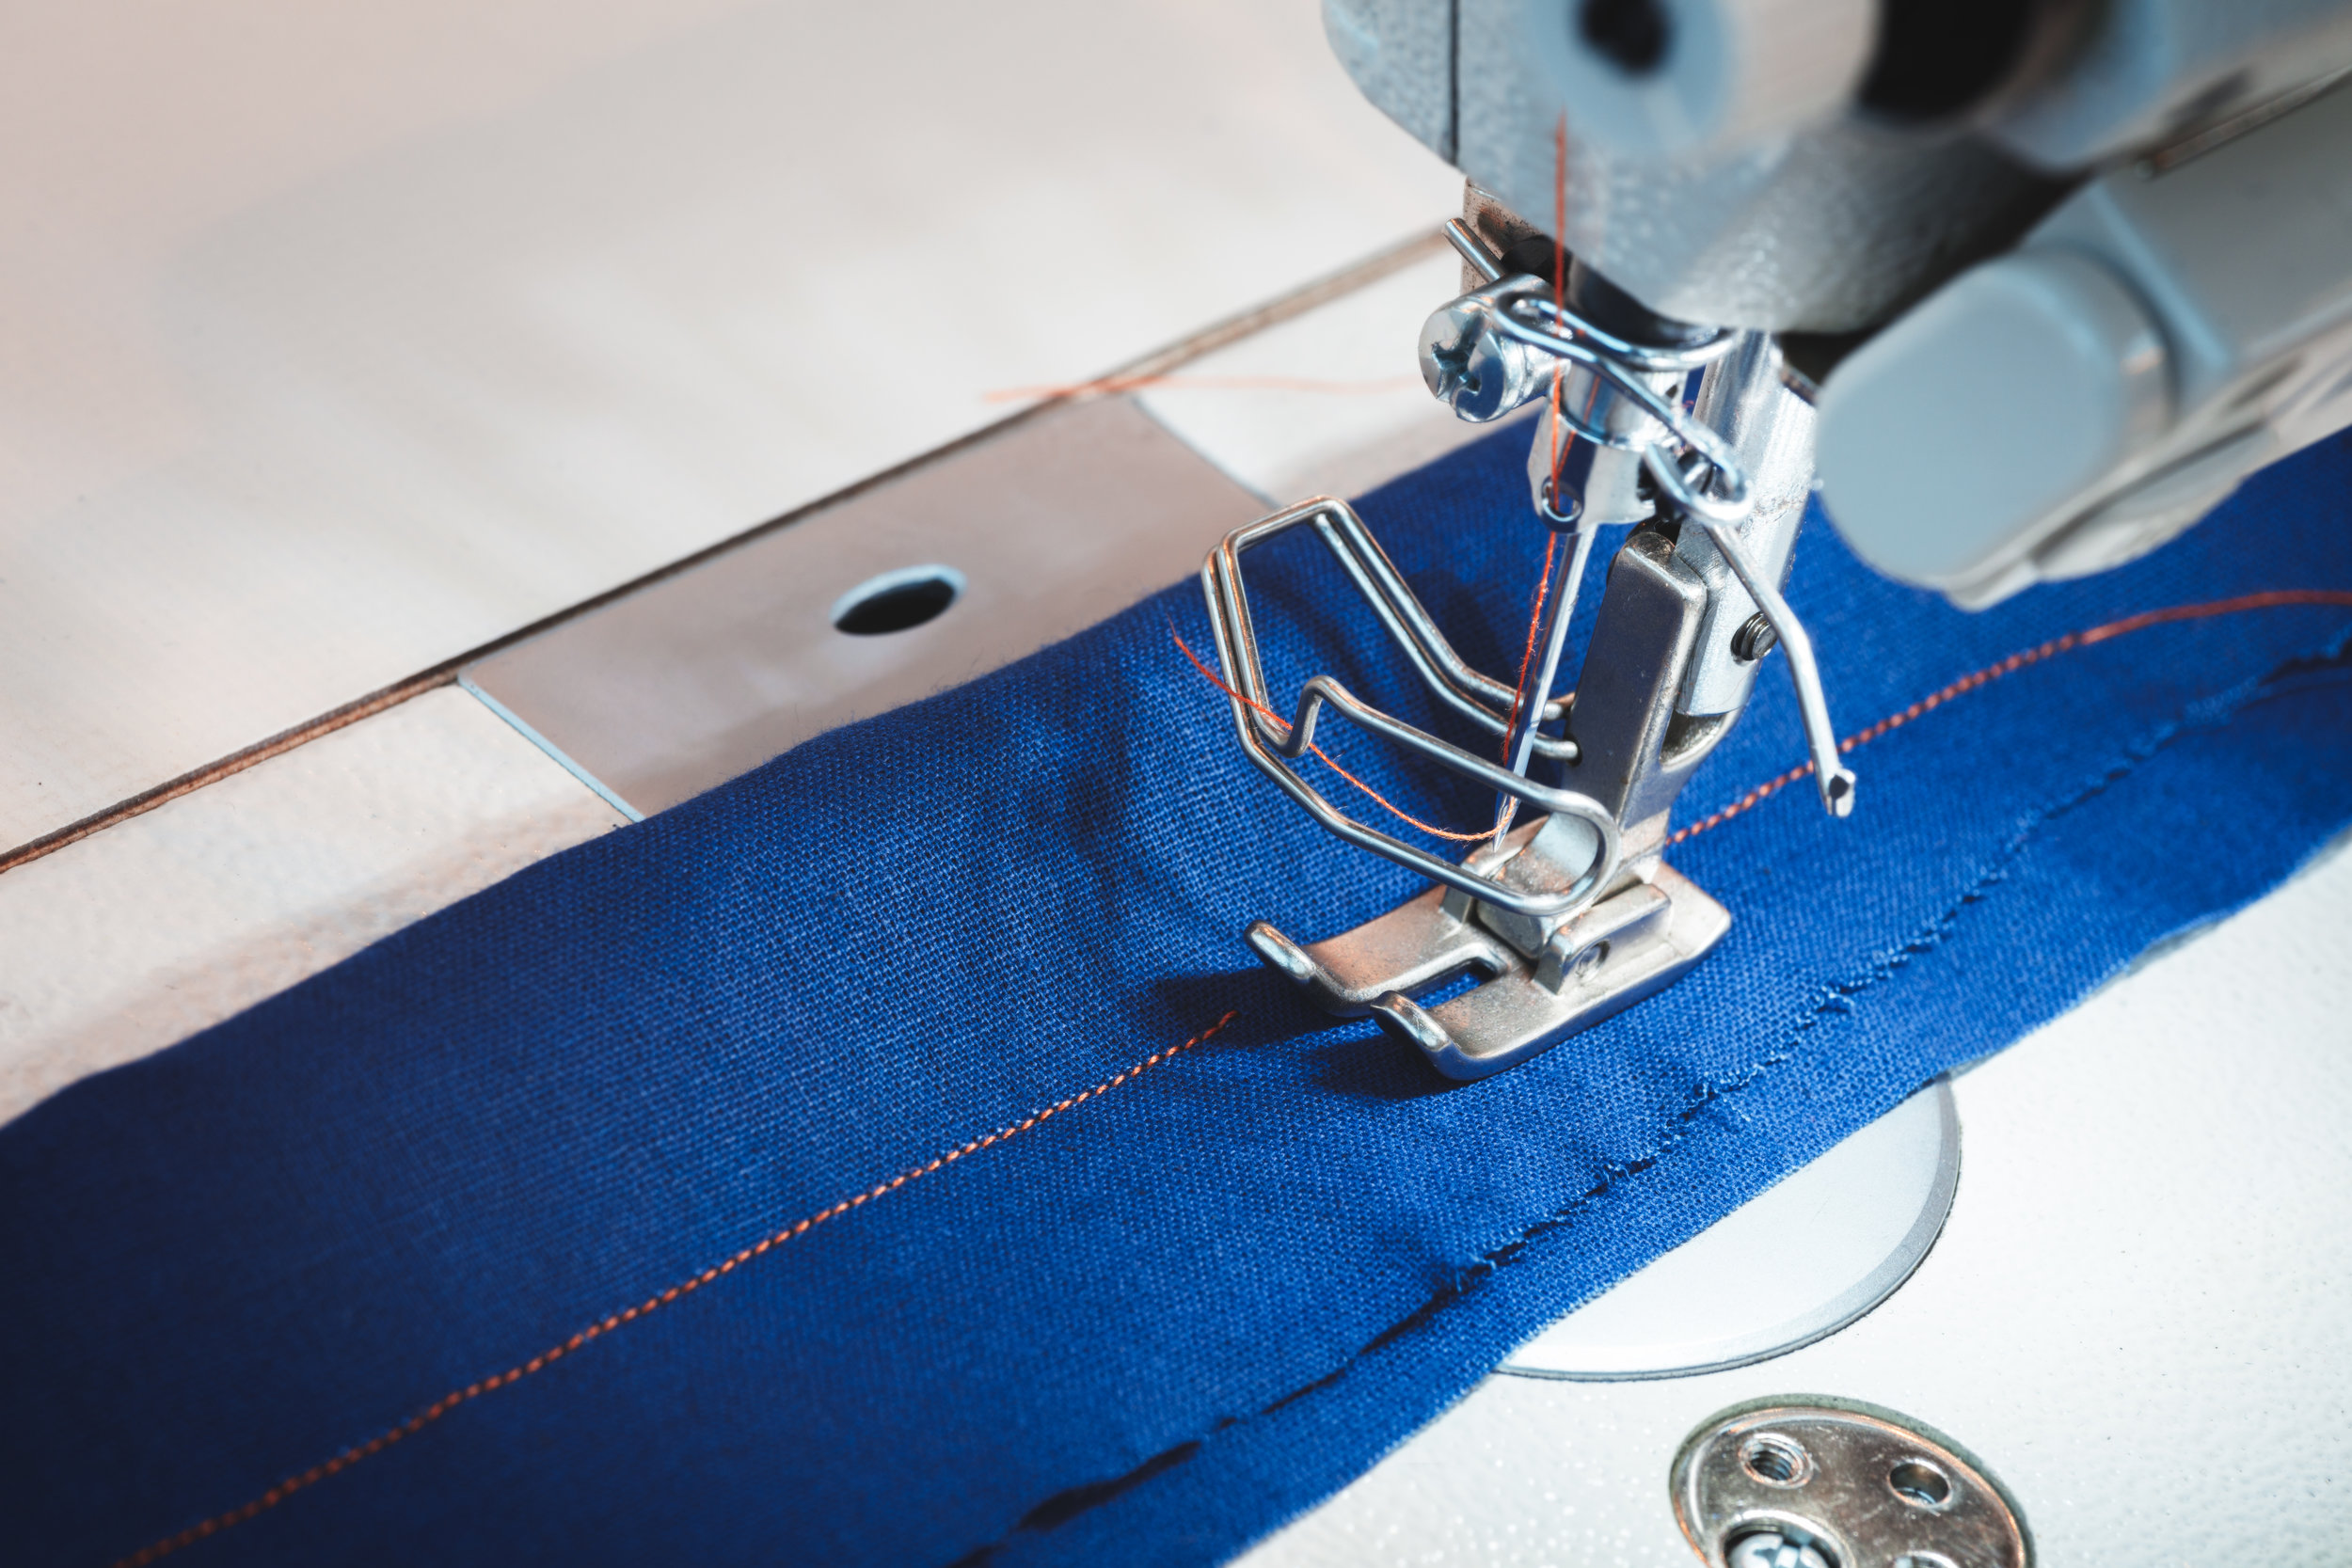 Sewing machine stitching blue fabric